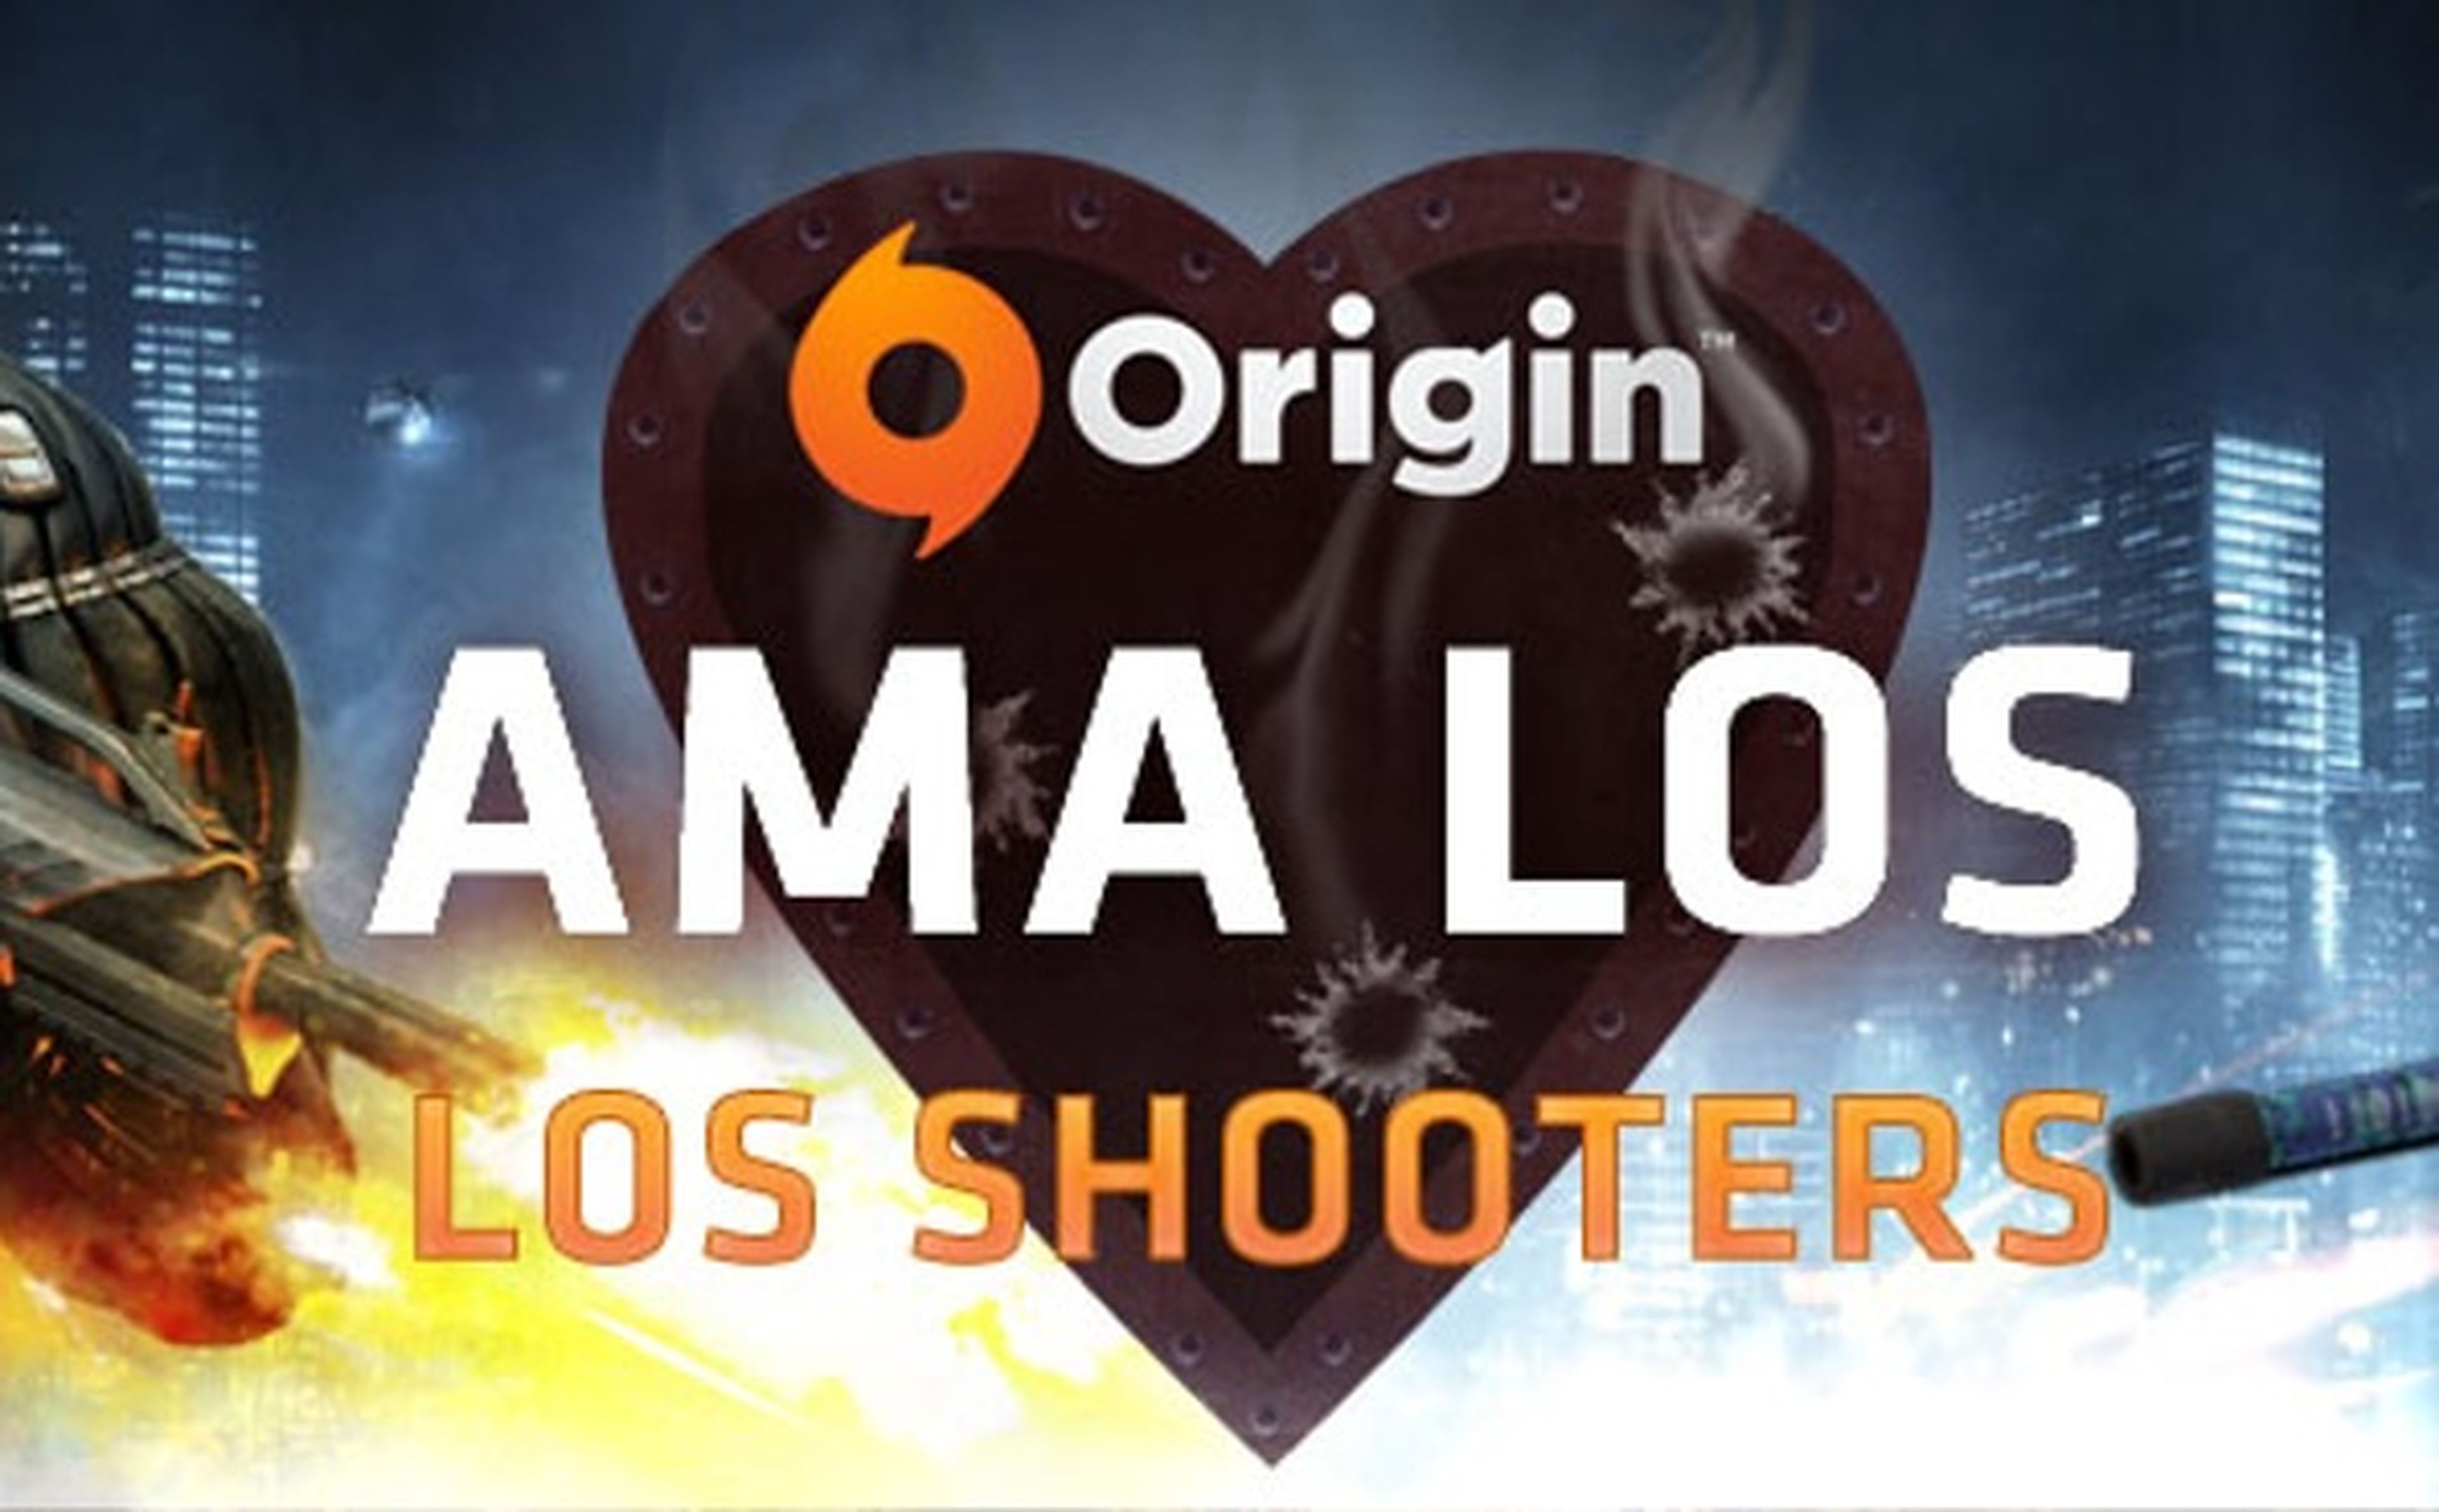 Origin ama los shooters a base de rebajas